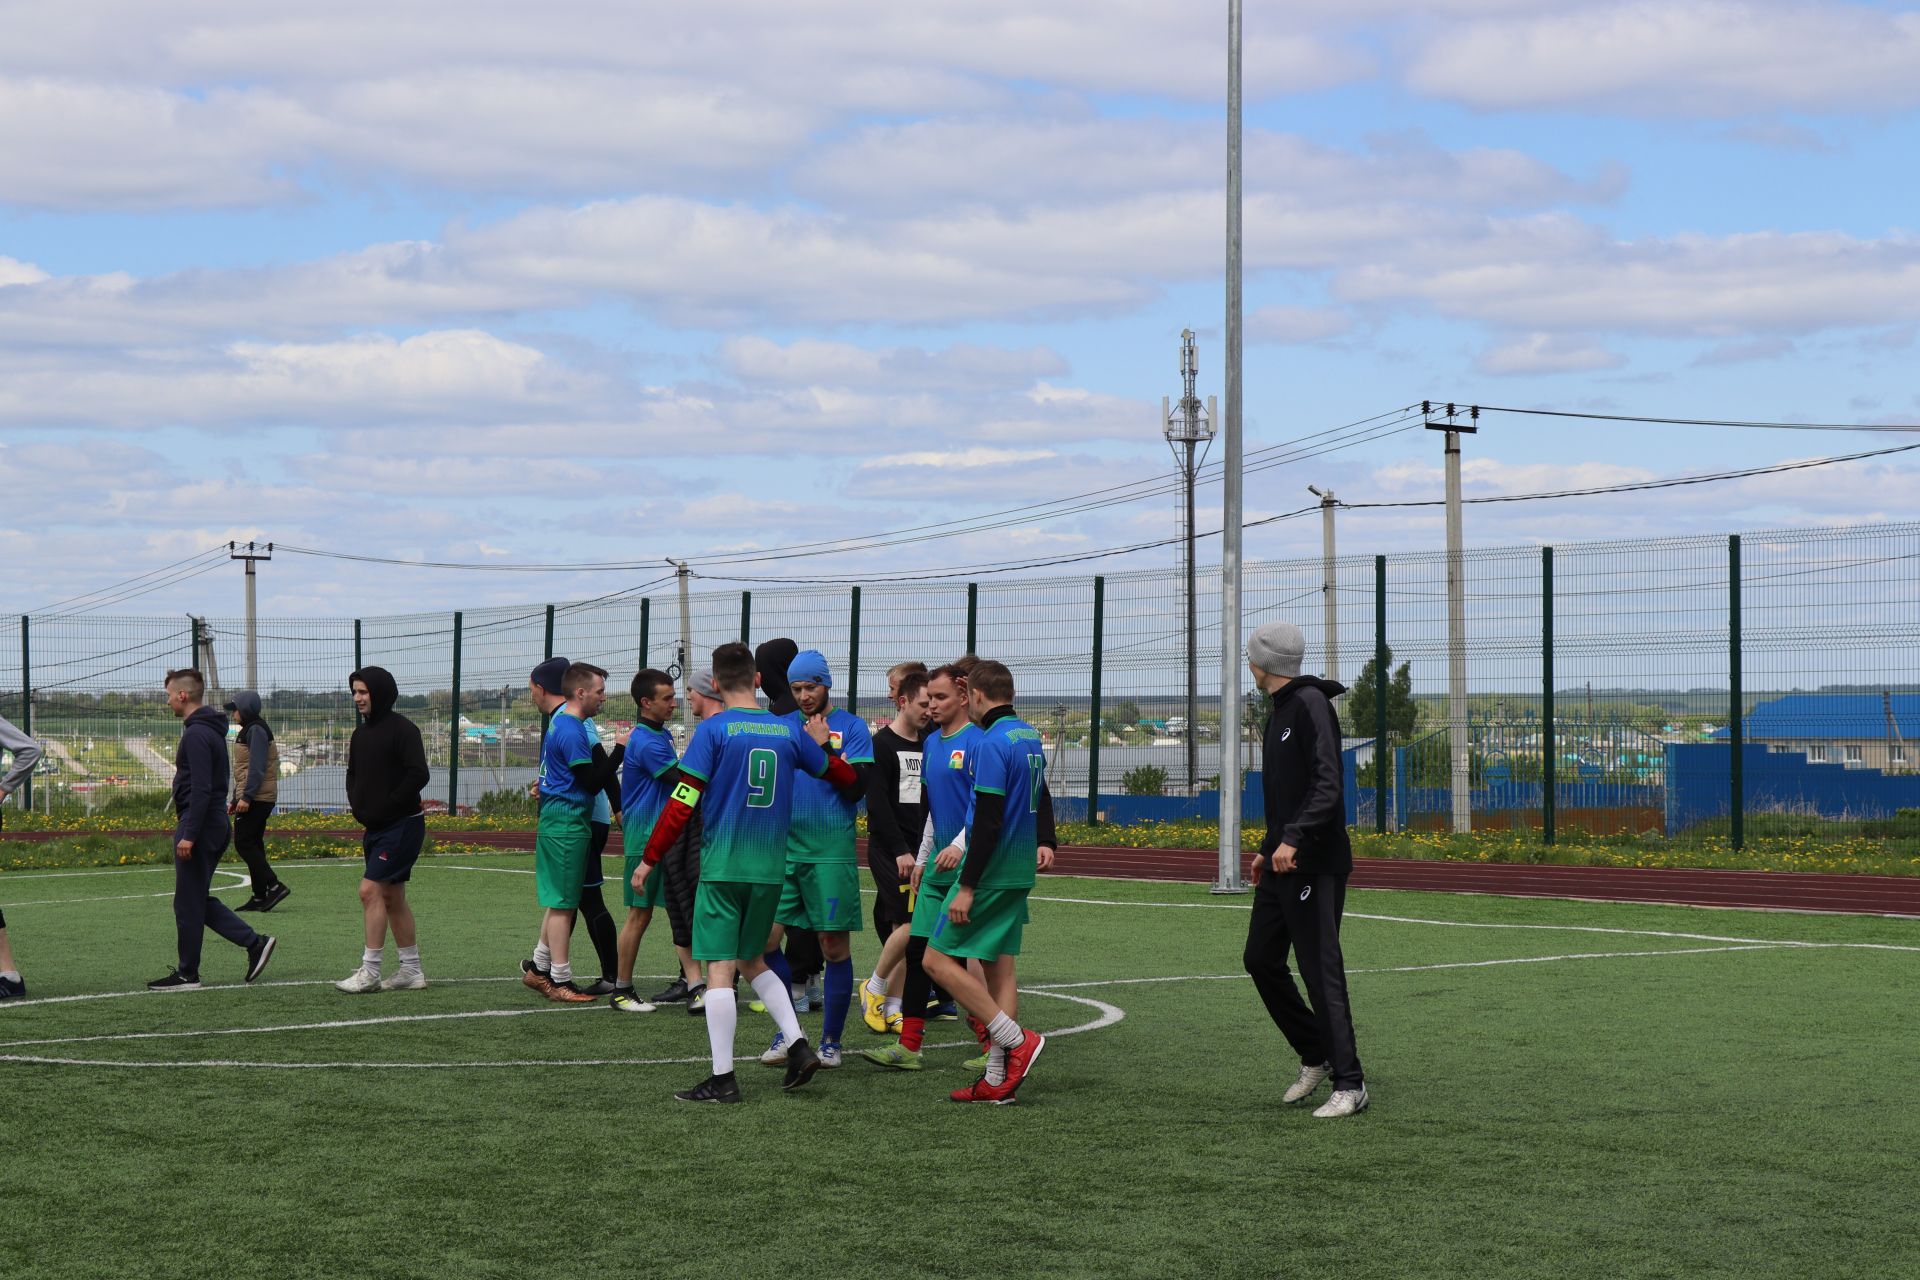 Традиционный открытый районный турнир по мини-футболу памяти Марата Салахова на Дрожжановской земле состоялся